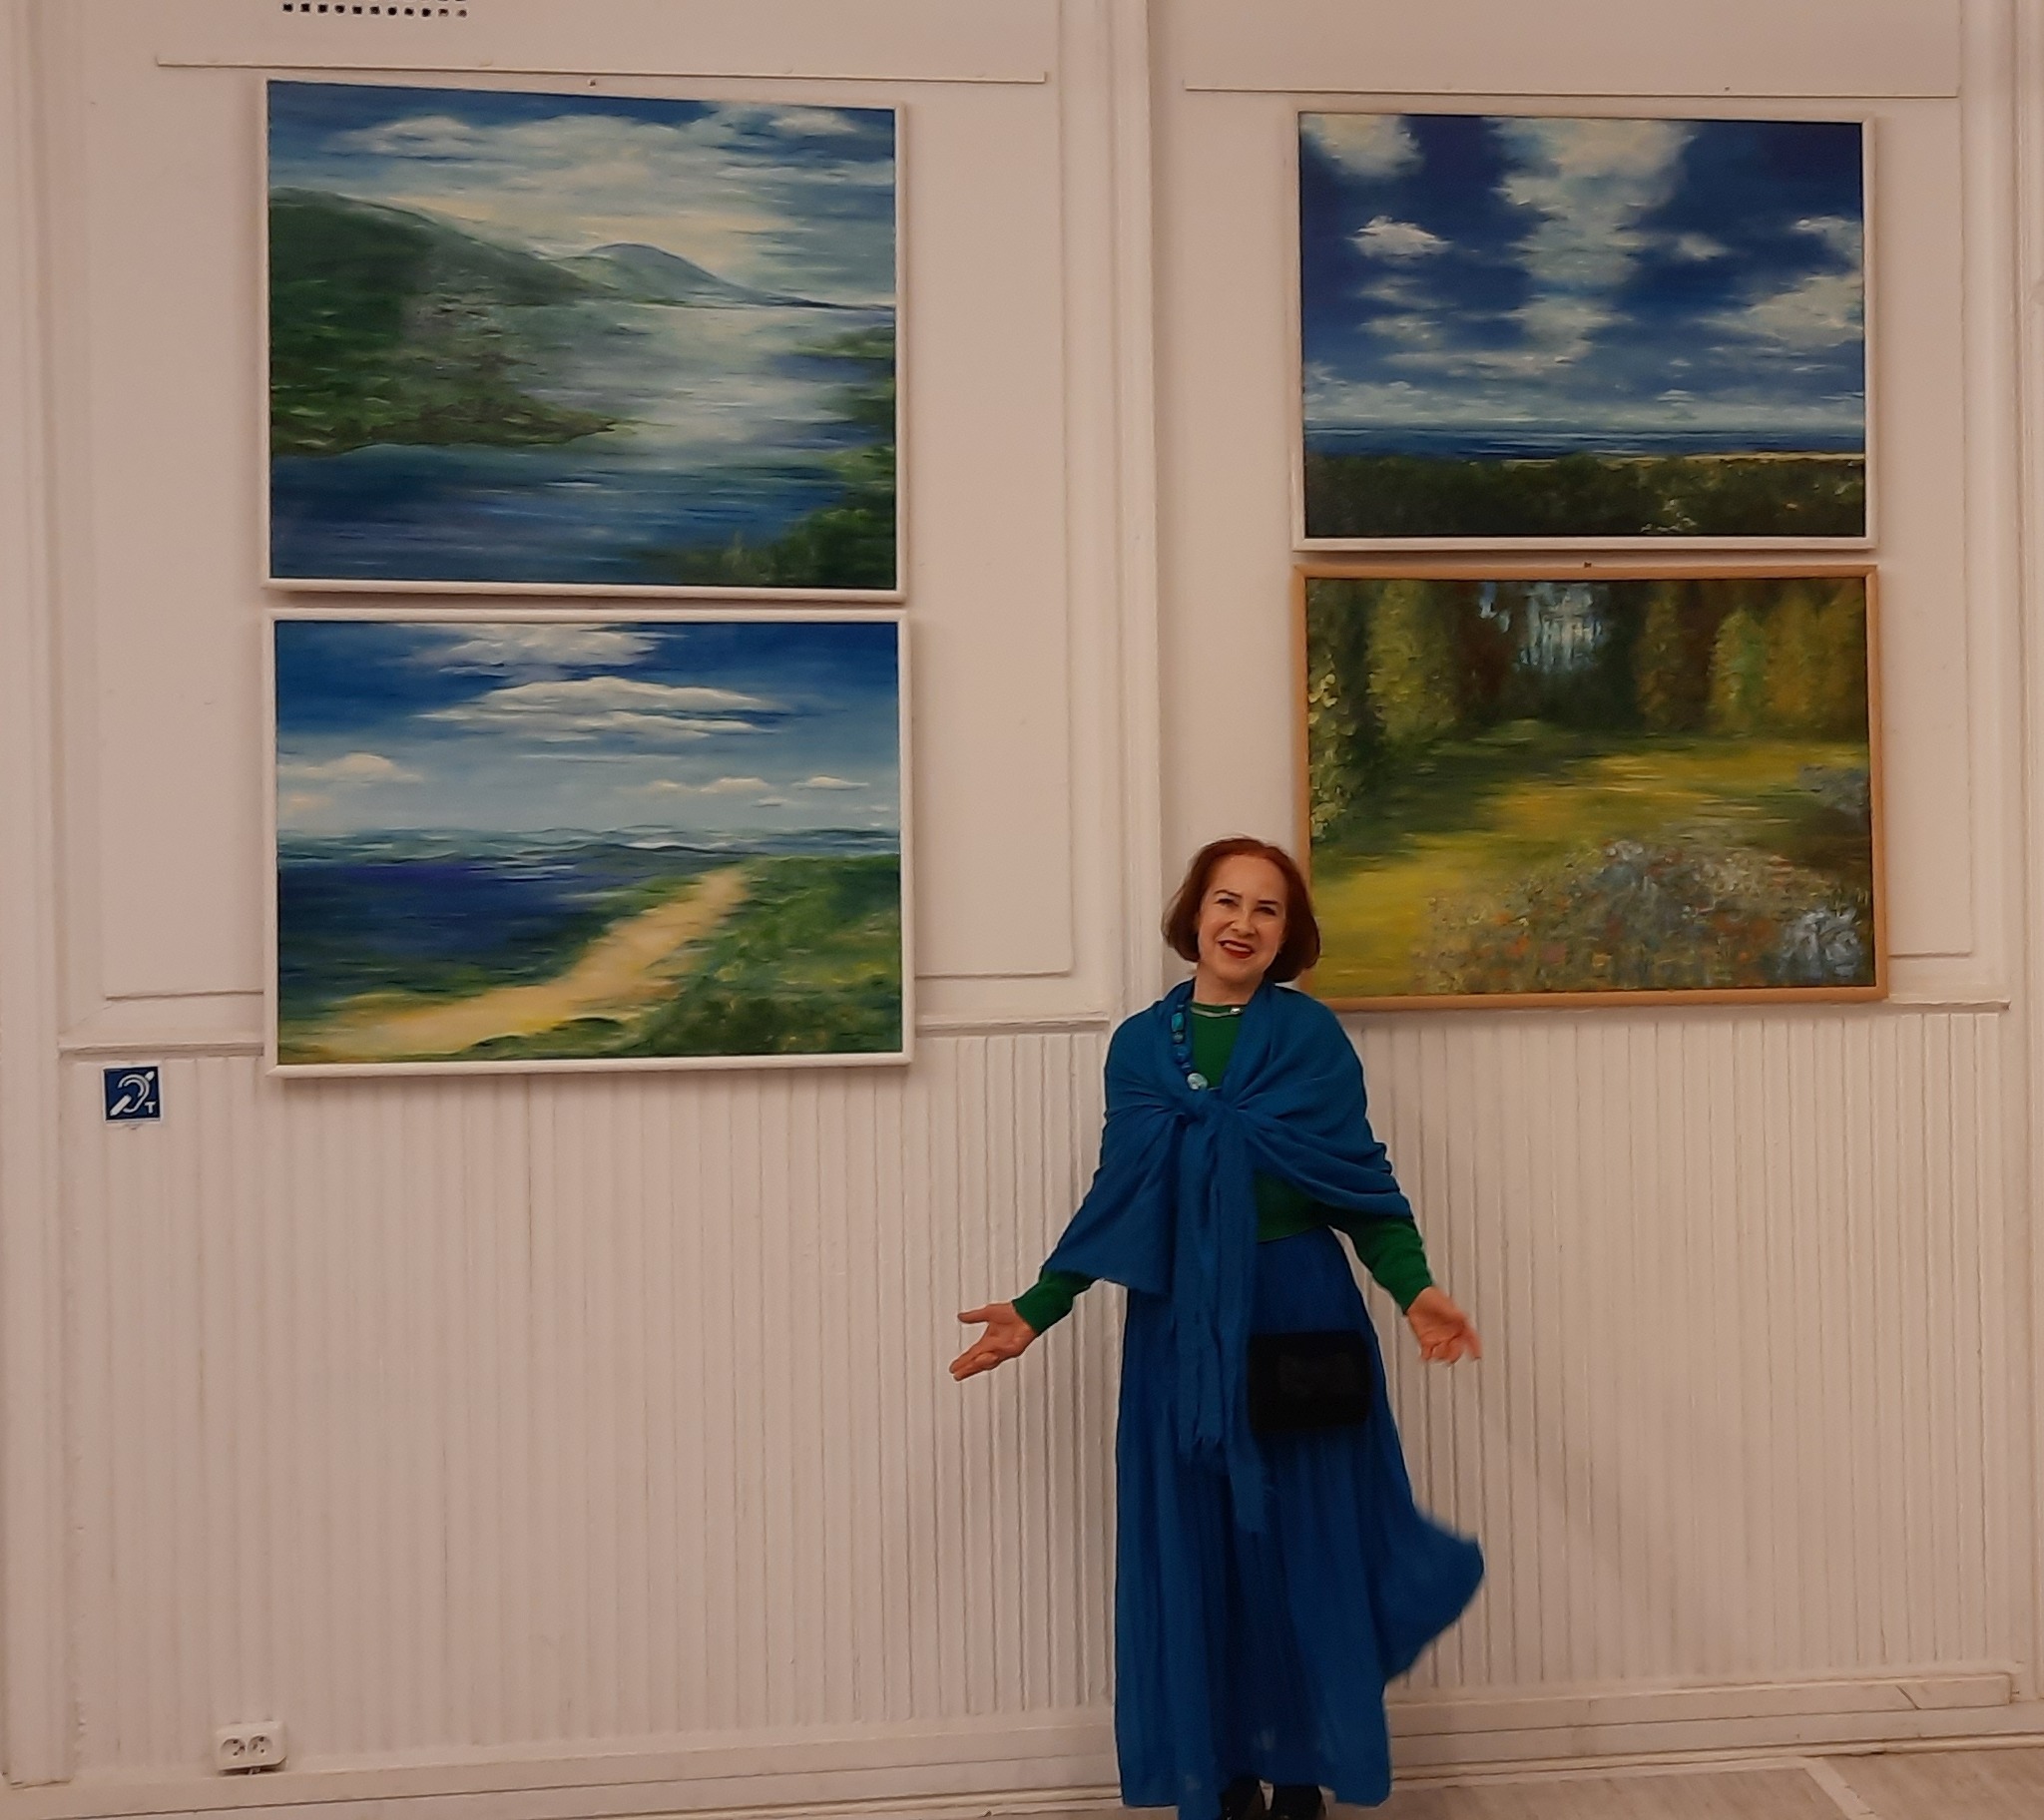 Zdjęcie przedstawia uśmiechniętą kobietę rozkładającą szroko ręce. W tle na białej ścianie wiszą cztery obrazy olejne z pejzażami.